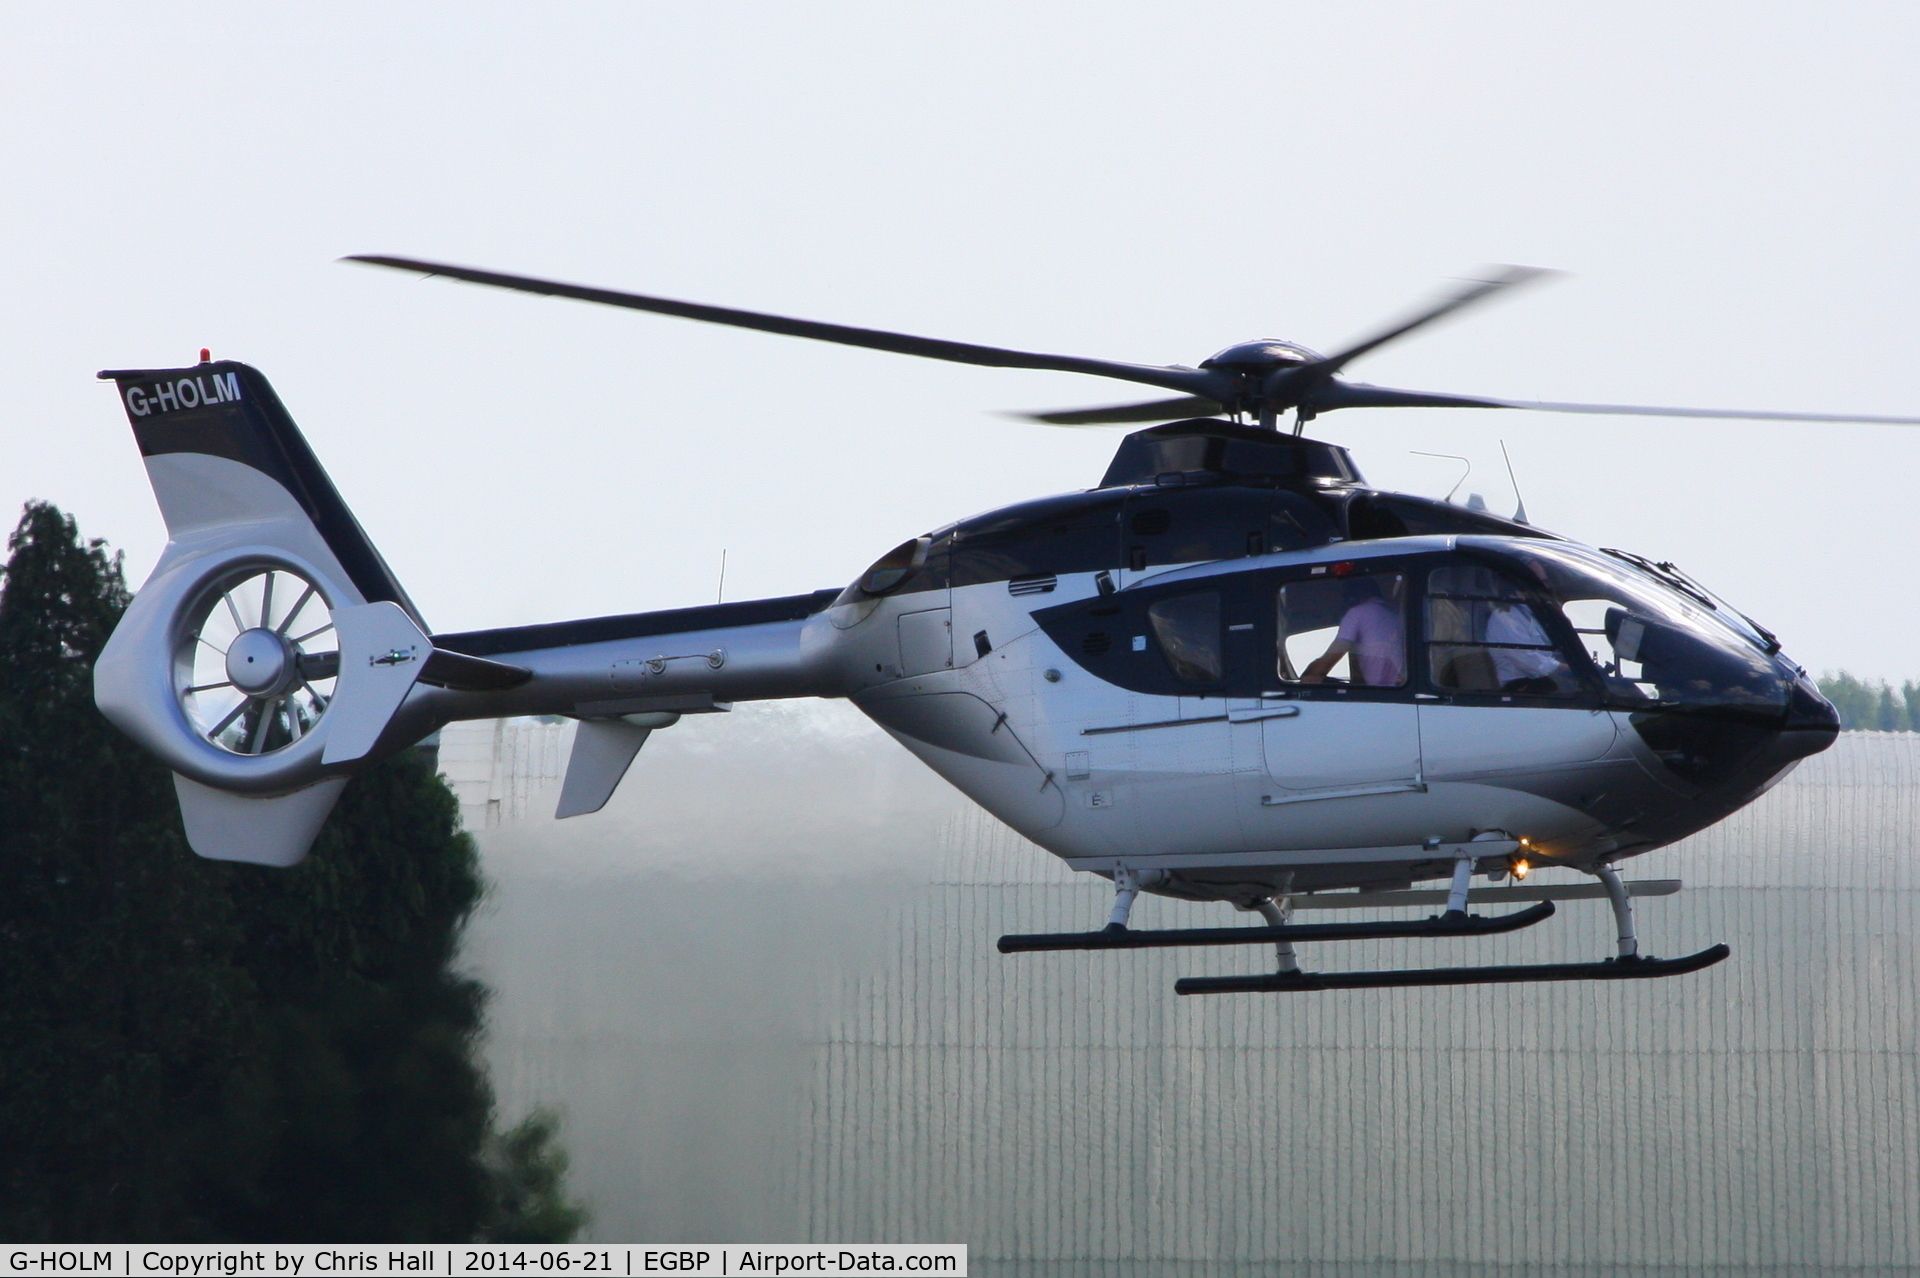 G-HOLM, 2007 Eurocopter EC-135T-2+ C/N 0574, arriving at Kemble for fuel